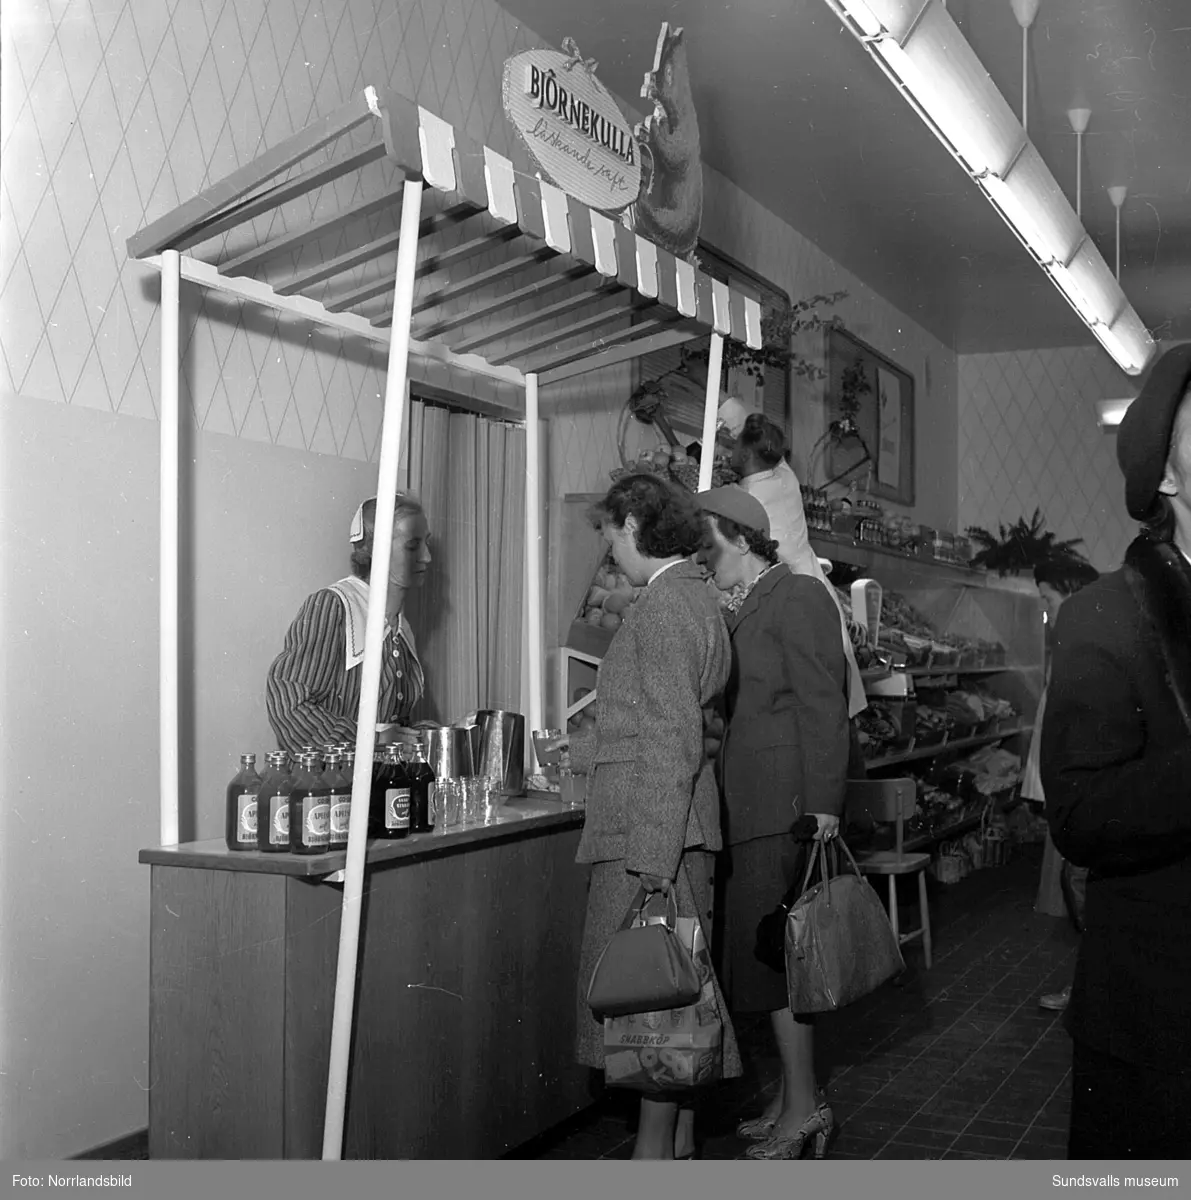 Konsums snabbköp vid Bankgatan har byggts ut 1952 och en kund är sångerskan Alice Babs som inspekterar fruktavdelningen och handlar för fem kronor och femtiosju öre.